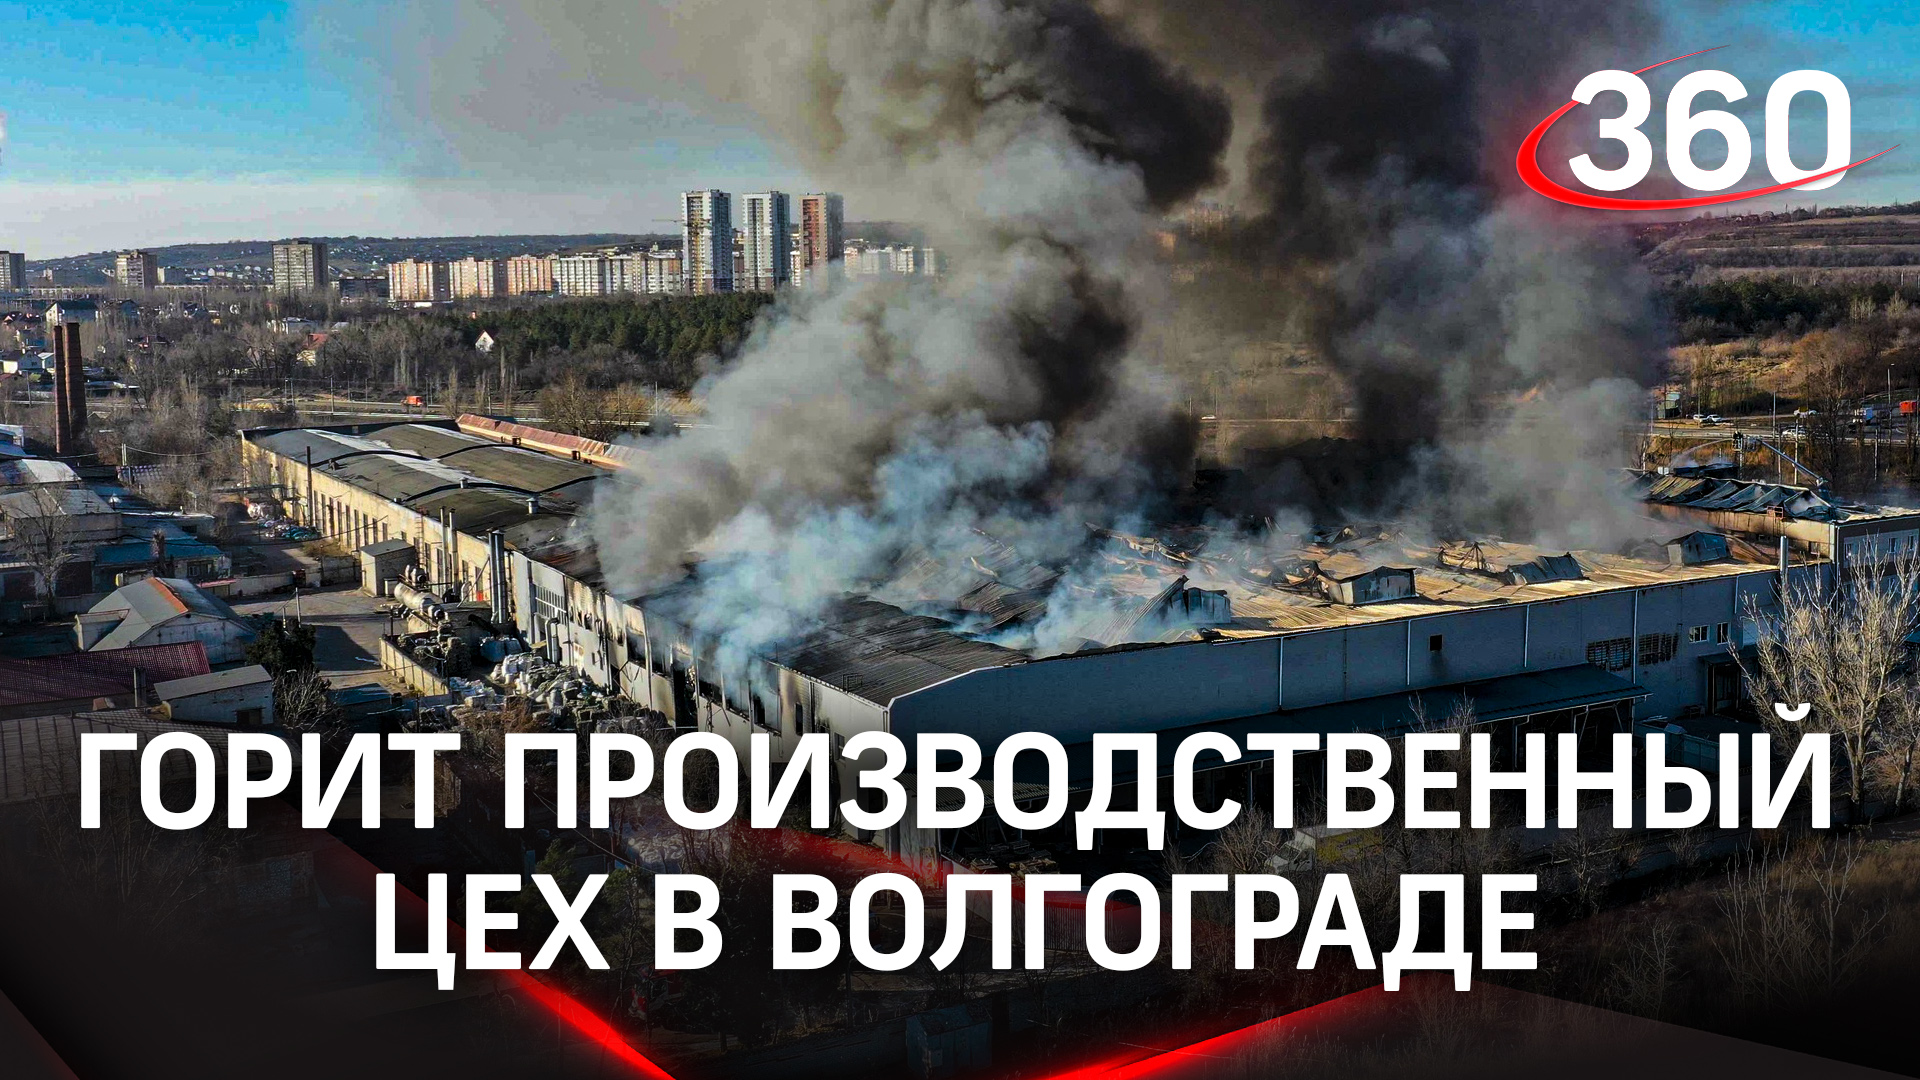 Огонь в цеху: пожар в Волгограде охватил 1,5 тыс. квадратных метров